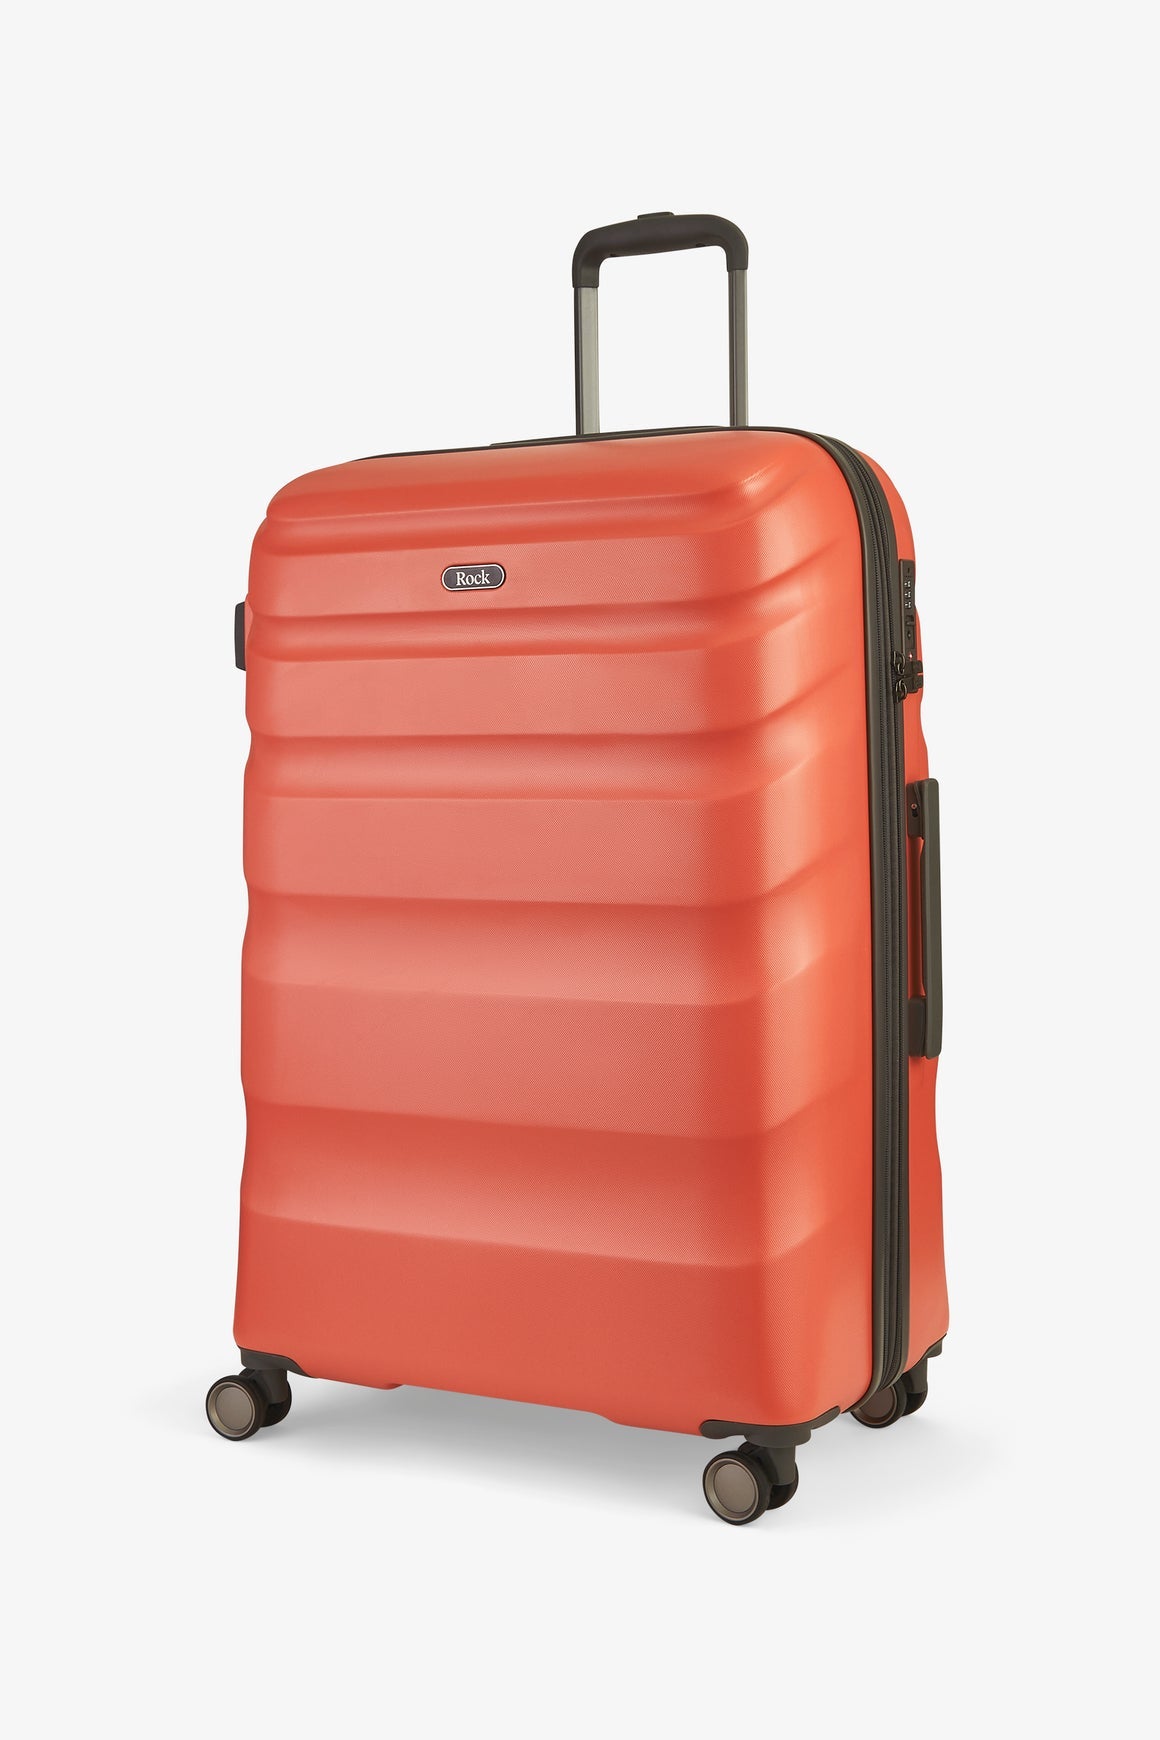 Bali Large Suitcase